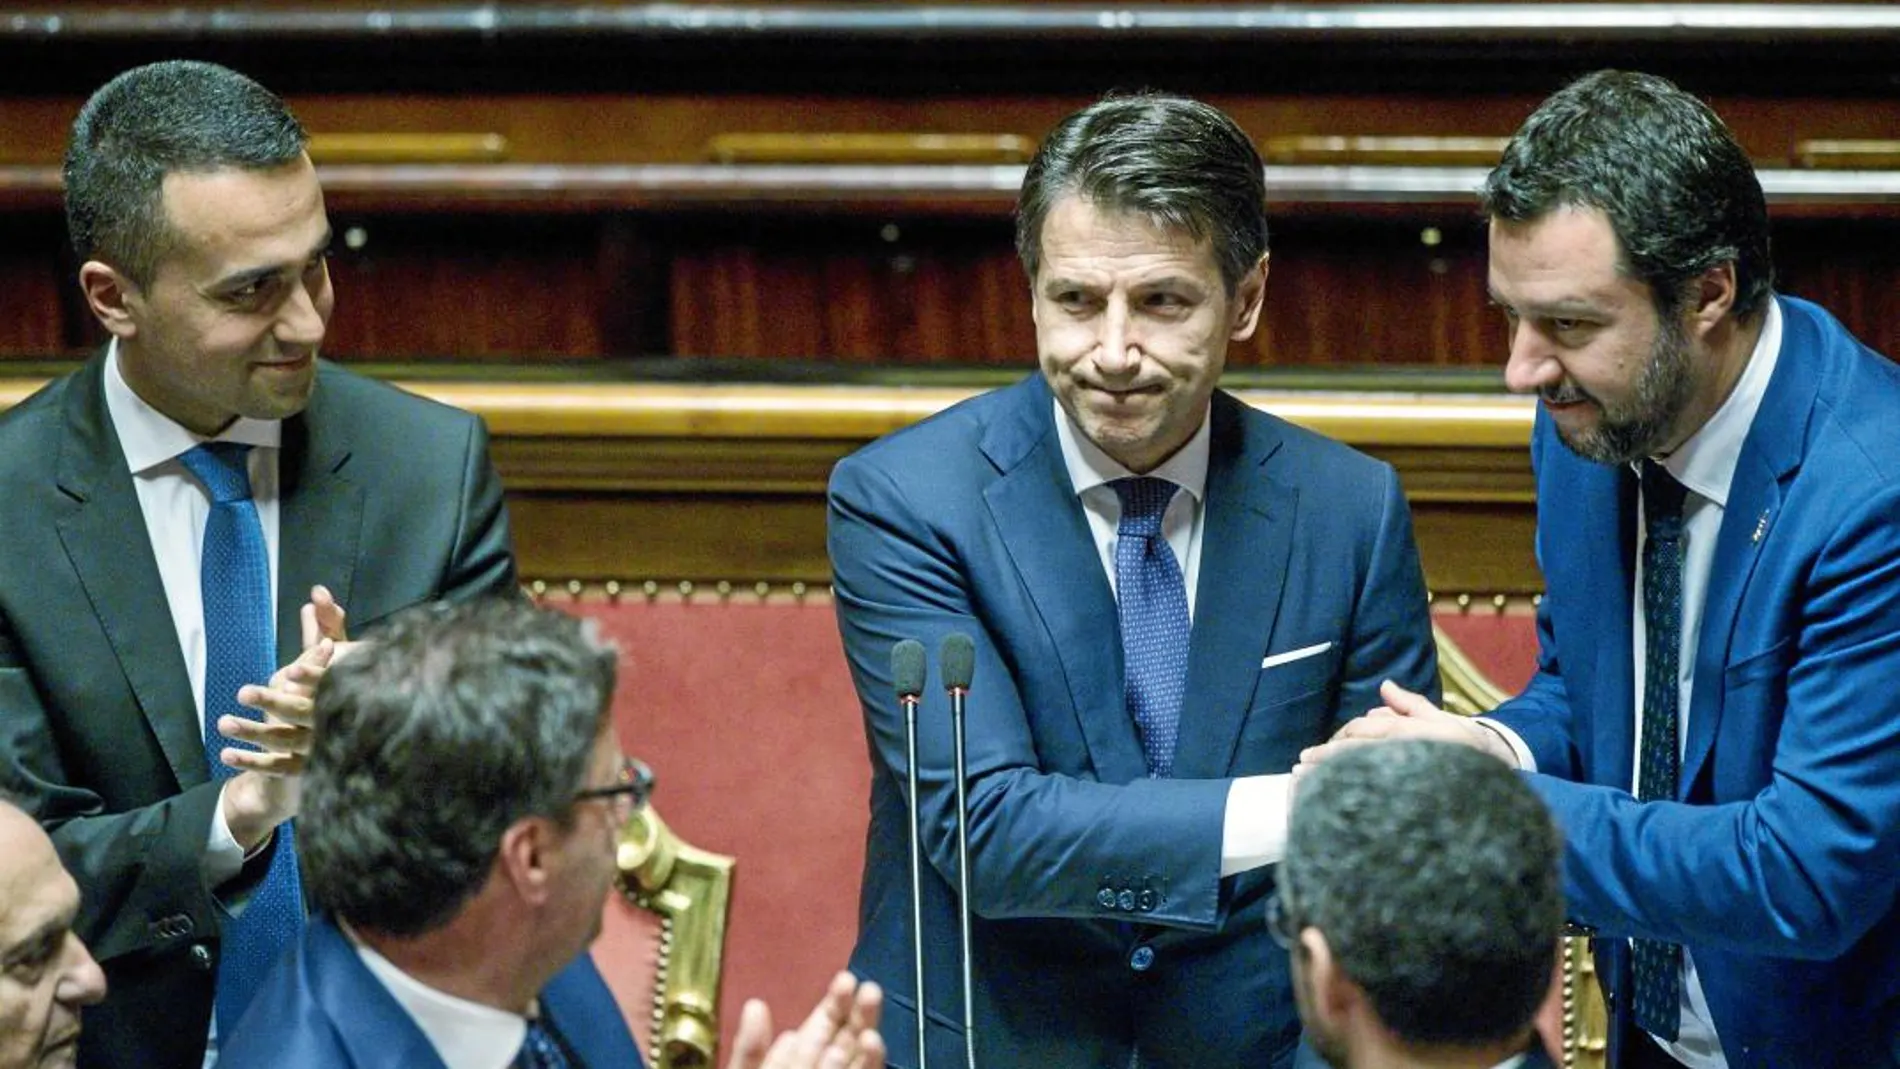 El «premier» Giuseppe Conte, en el centro, rodeado de Luigi di Maio (izqda.) y Matteo Salvini (dcha.), sus dos vicepresidentes, ayer en el Senado